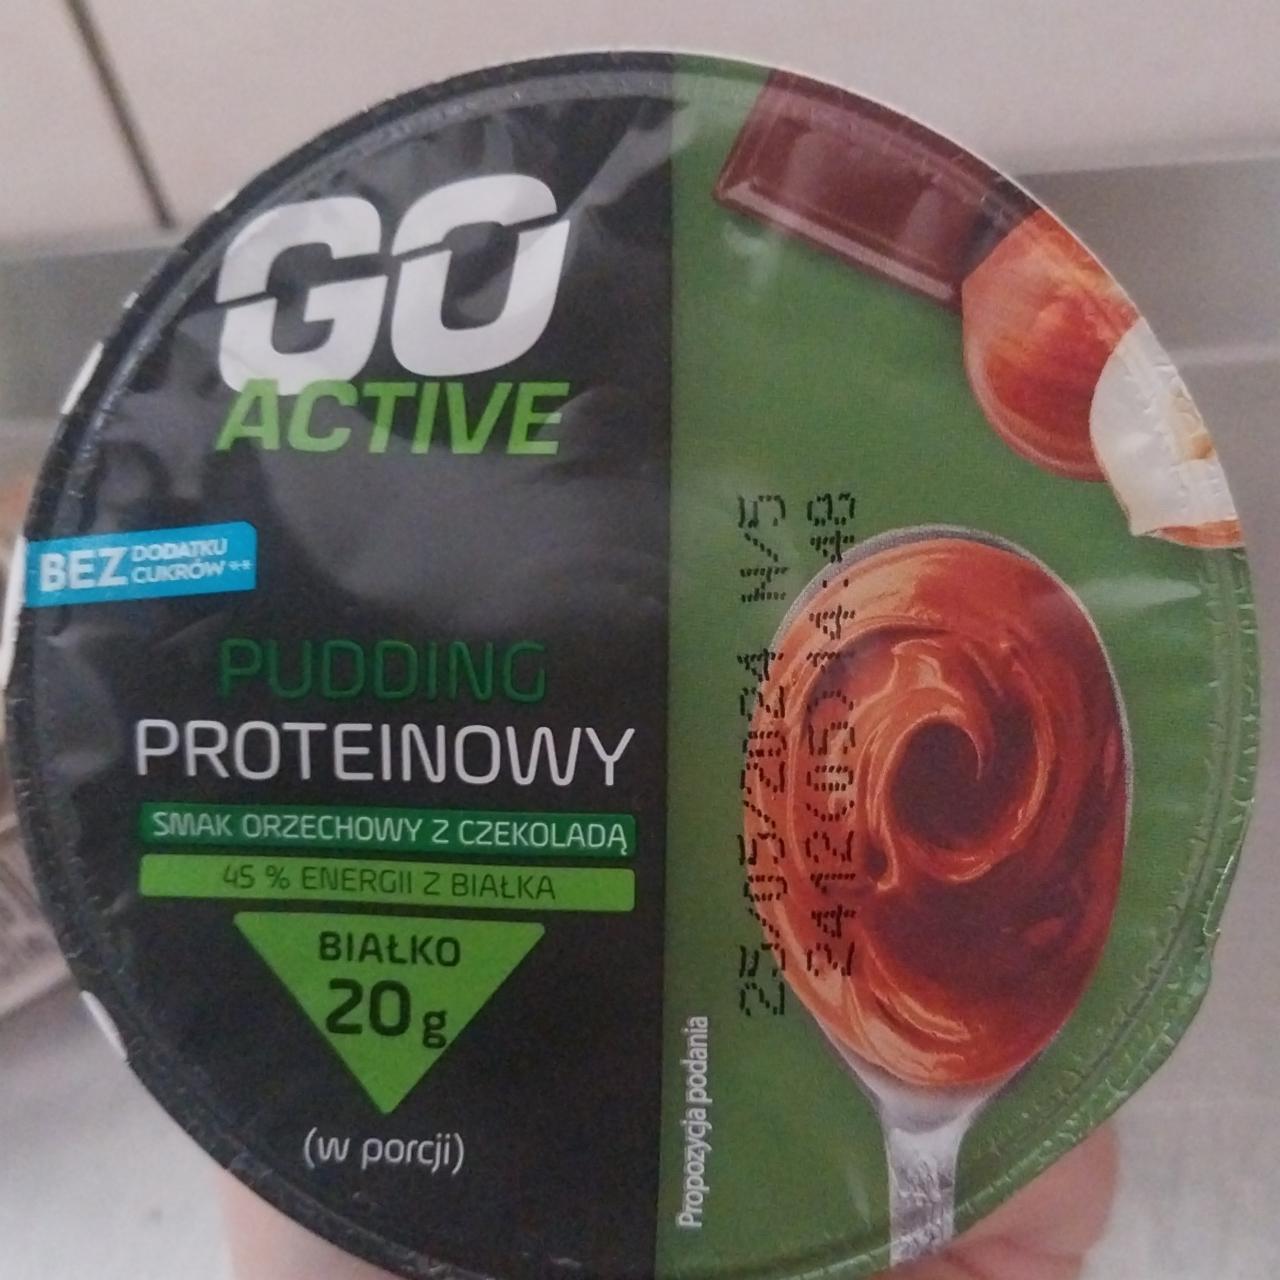 Fotografie - Pudding proteinowy smak orzechowy z czekolada Go Active